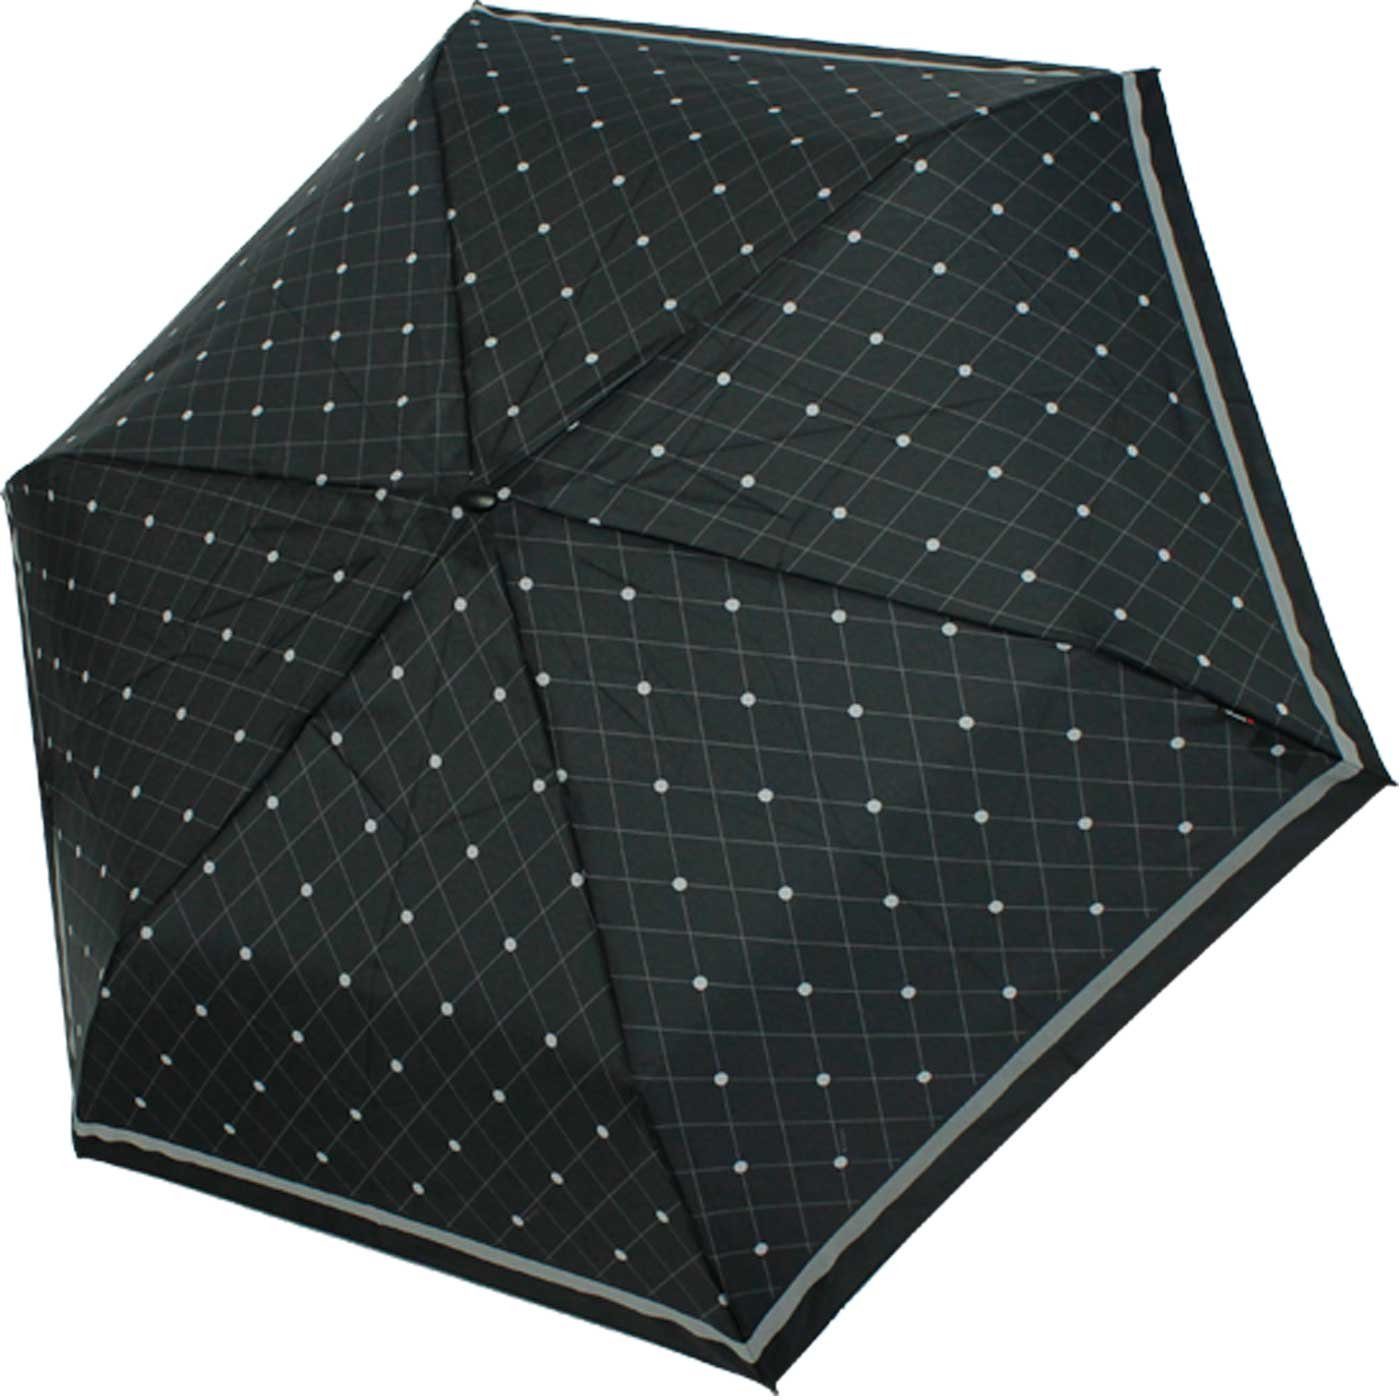 für passend ein Tasche, Begleiter, jede Knirps® Notfall für jeden flacher, Schirm, treuer Taschenregenschirm stabiler